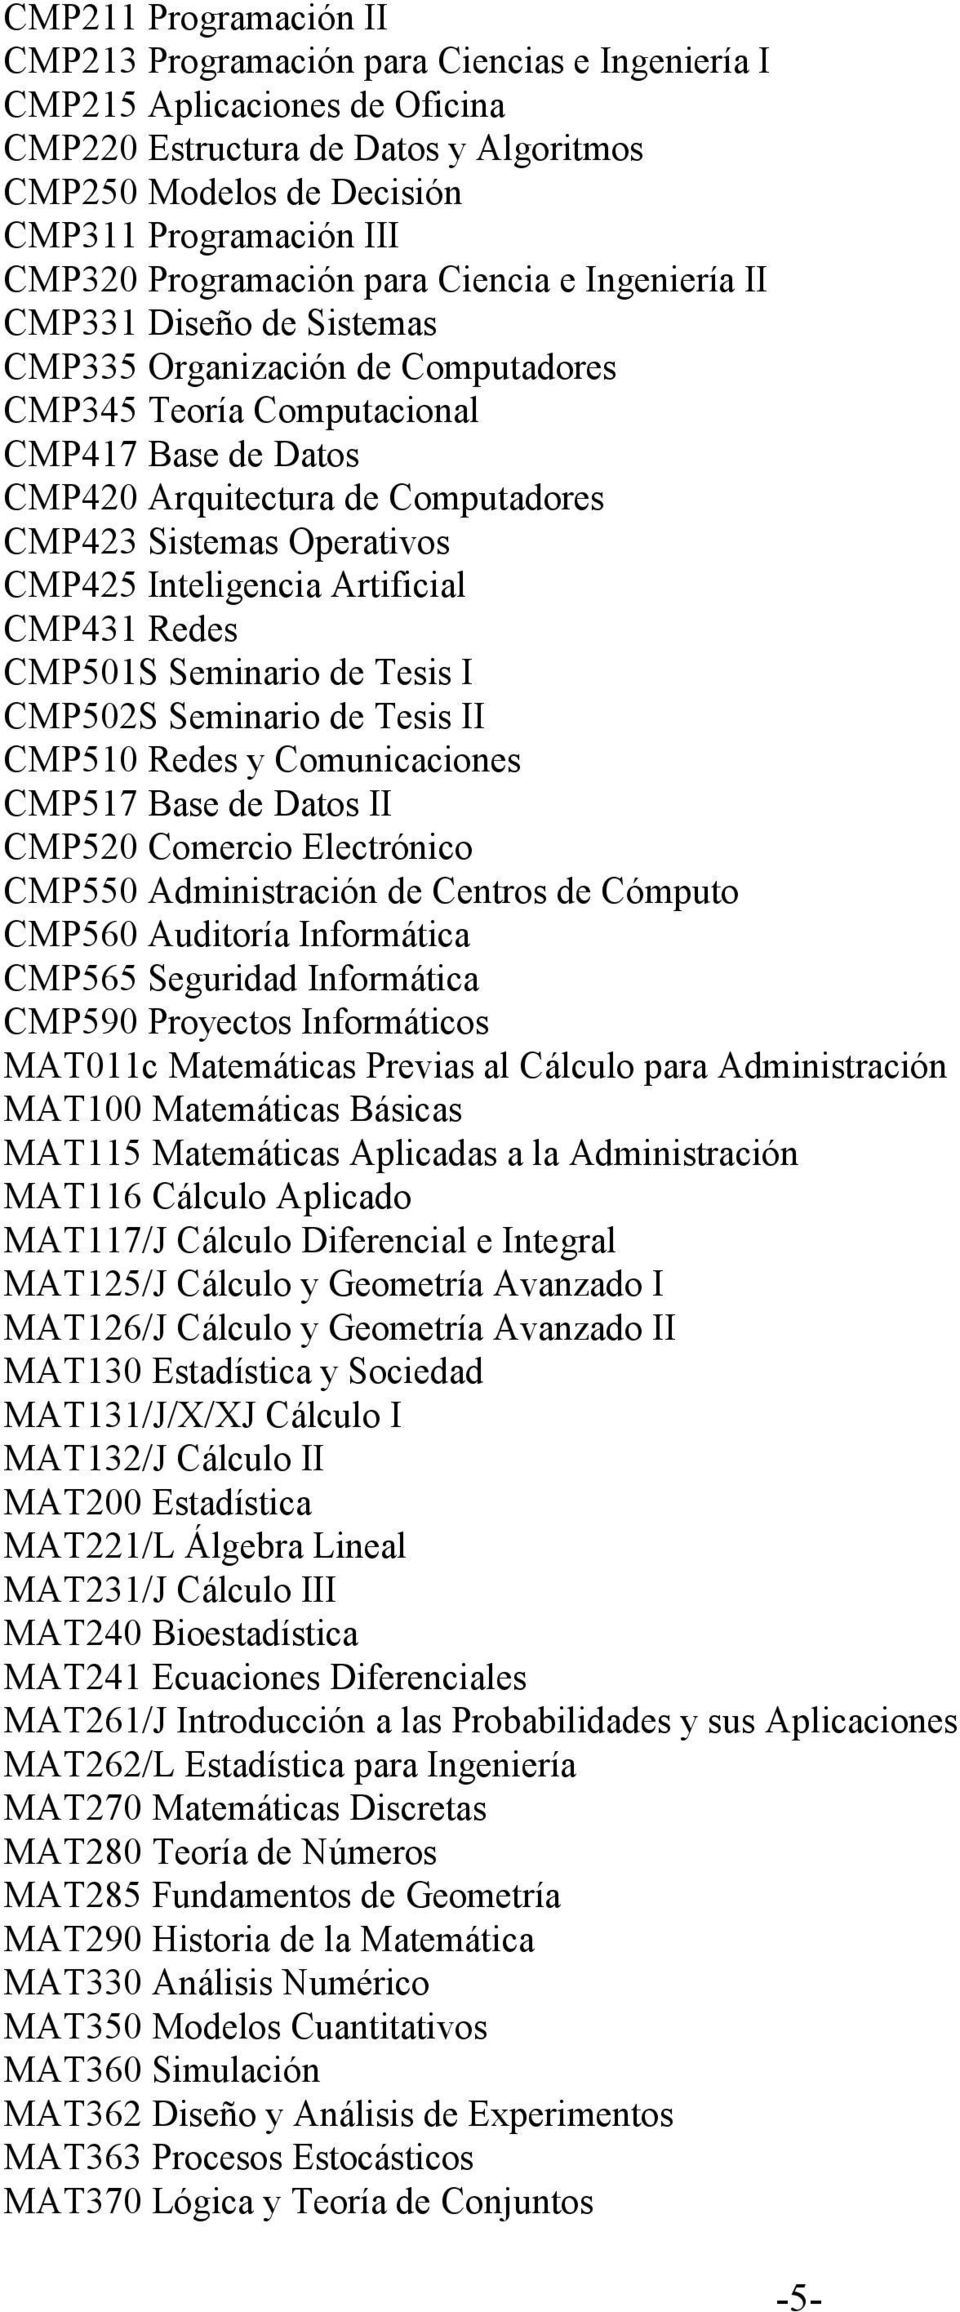 CMP423 Sistemas Operativos CMP425 Inteligencia Artificial CMP431 Redes CMP501S Seminario de Tesis I CMP502S Seminario de Tesis II CMP510 Redes y Comunicaciones CMP517 Base de Datos II CMP520 Comercio